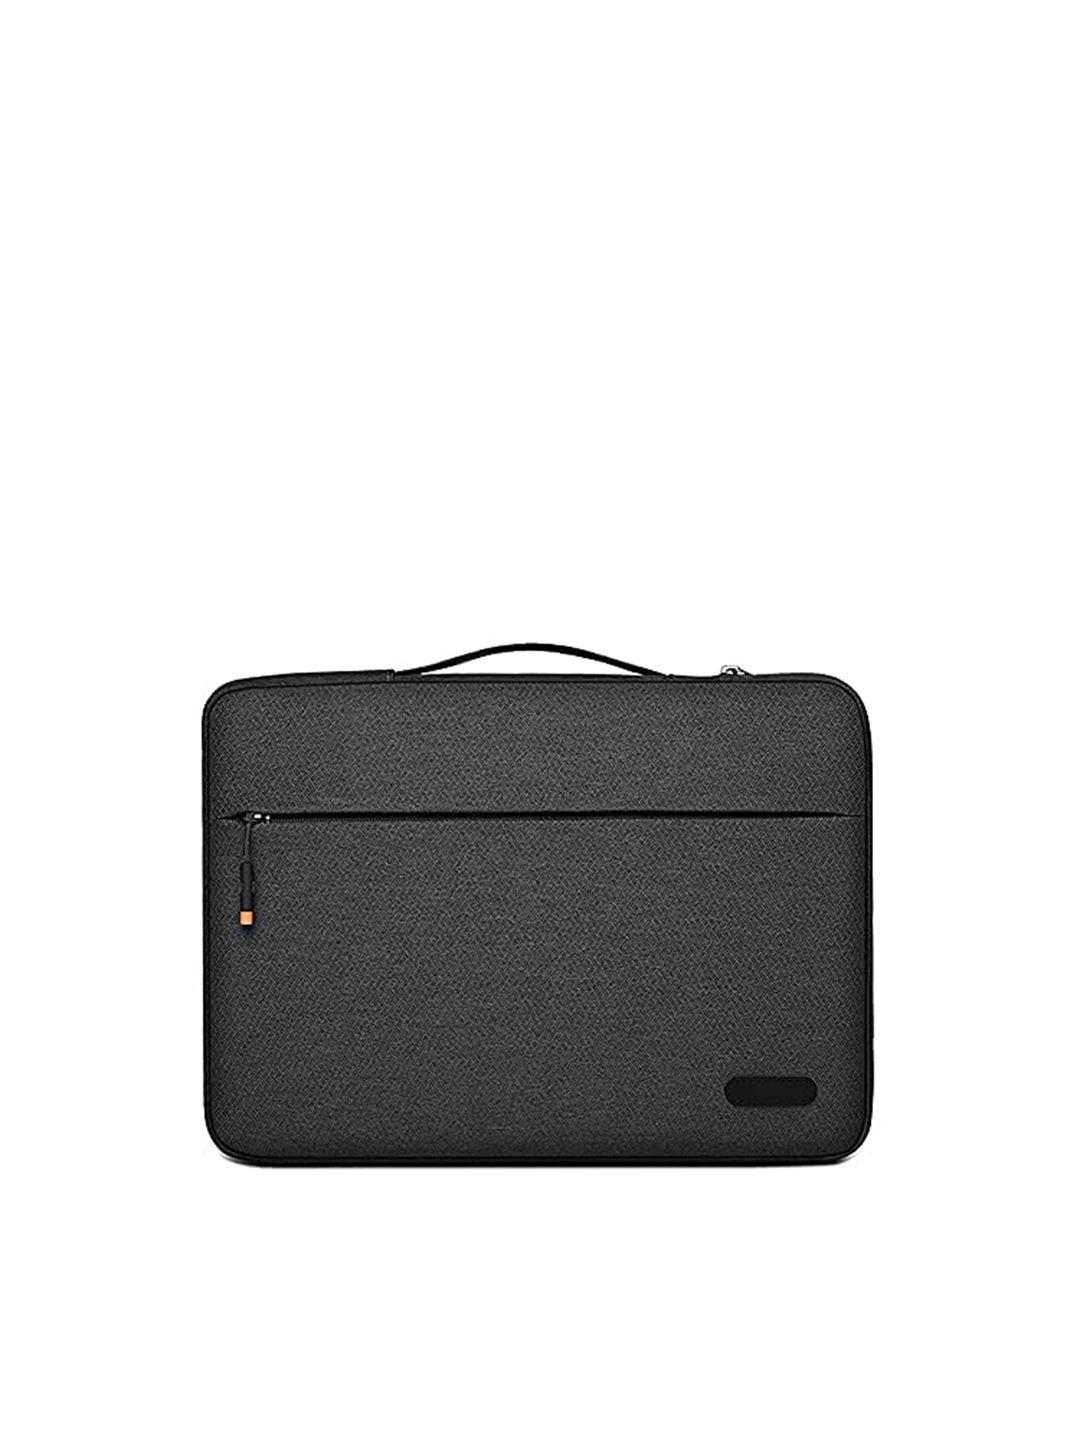 red lemon unisex black laptop bag